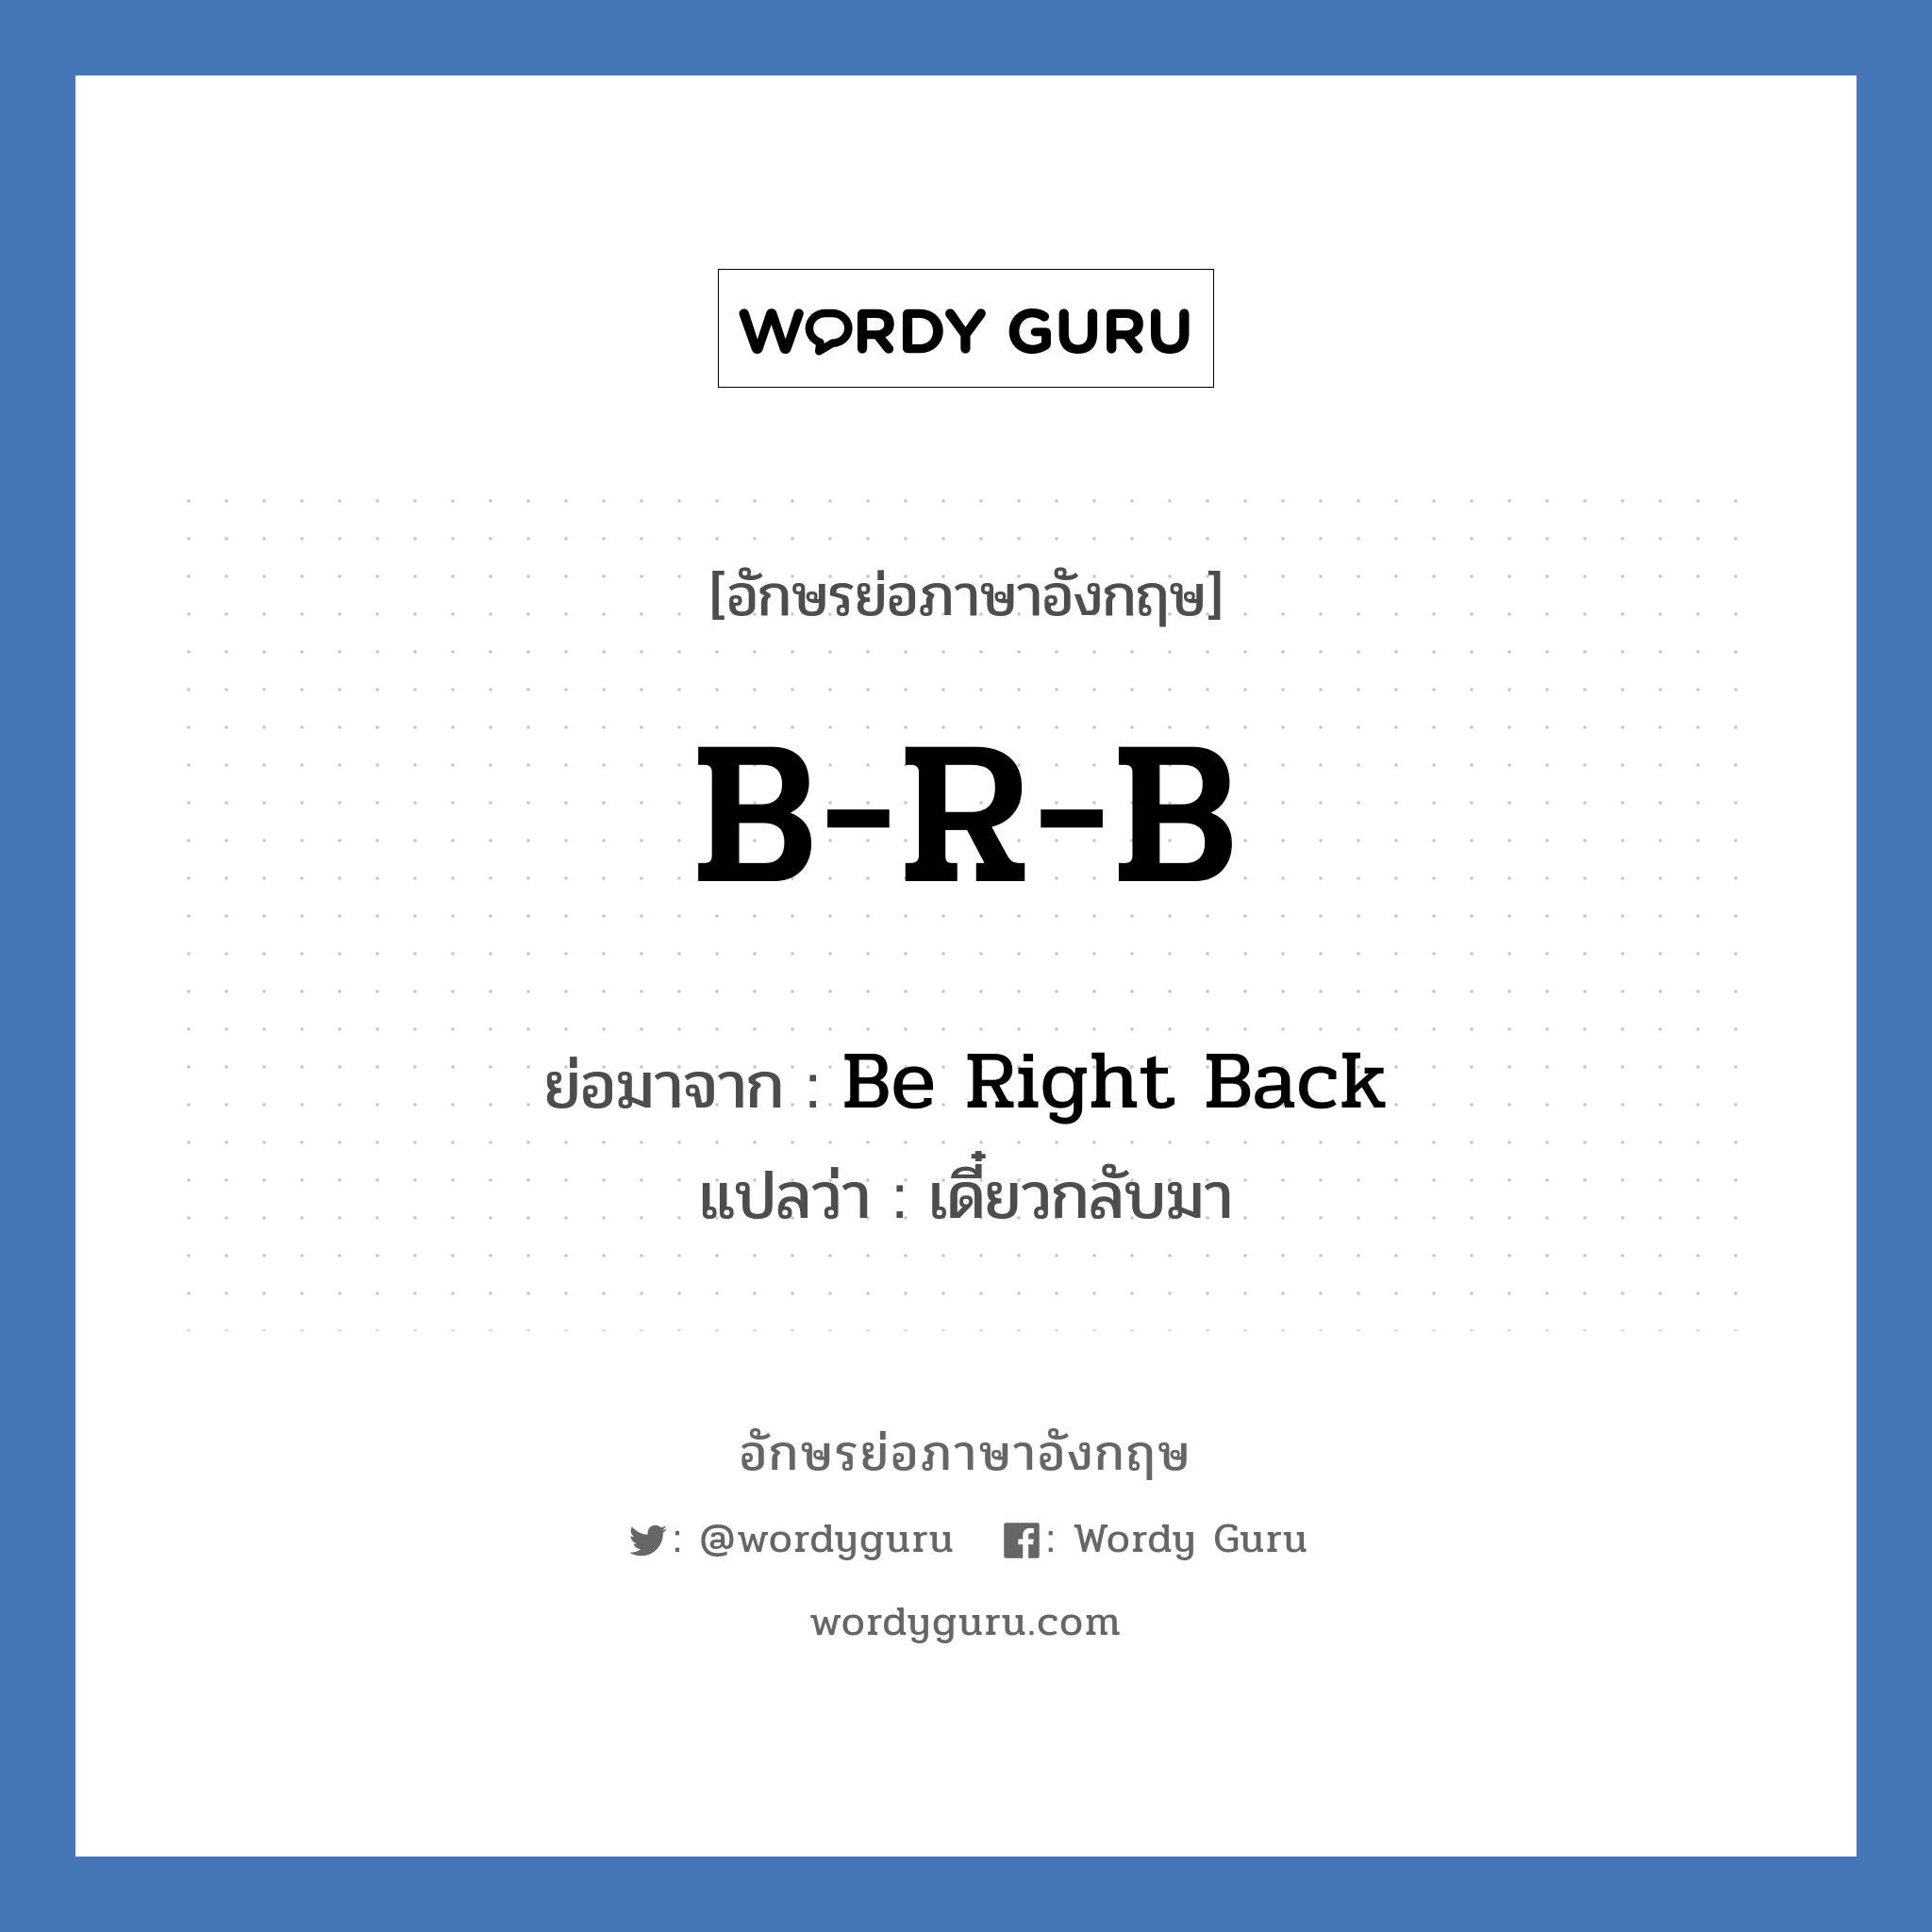 B-R-B ย่อมาจาก? แปลว่า?, อักษรย่อภาษาอังกฤษ B-R-B ย่อมาจาก Be Right Back แปลว่า เดี๋ยวกลับมา